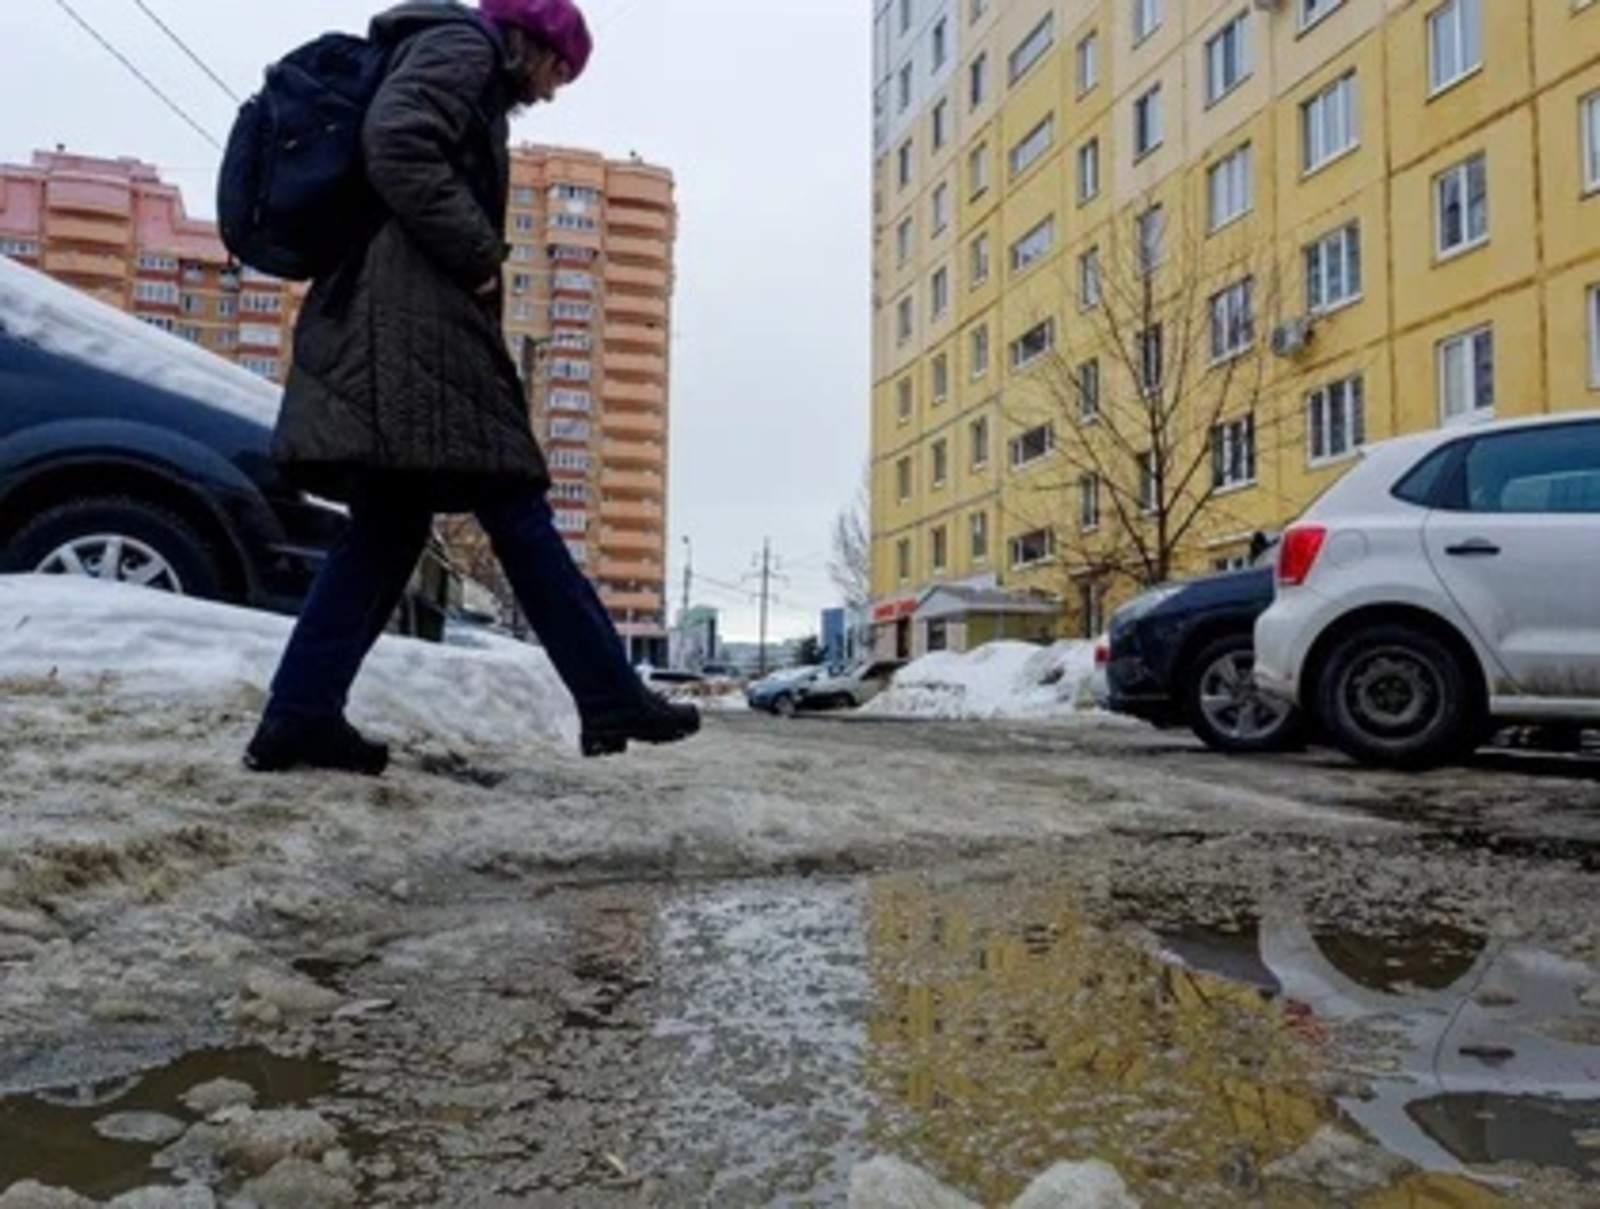 Альберт ЗАГИРОВ  МЧС Башкирии предупредило о травмоопасной погоде: на улицах скользко